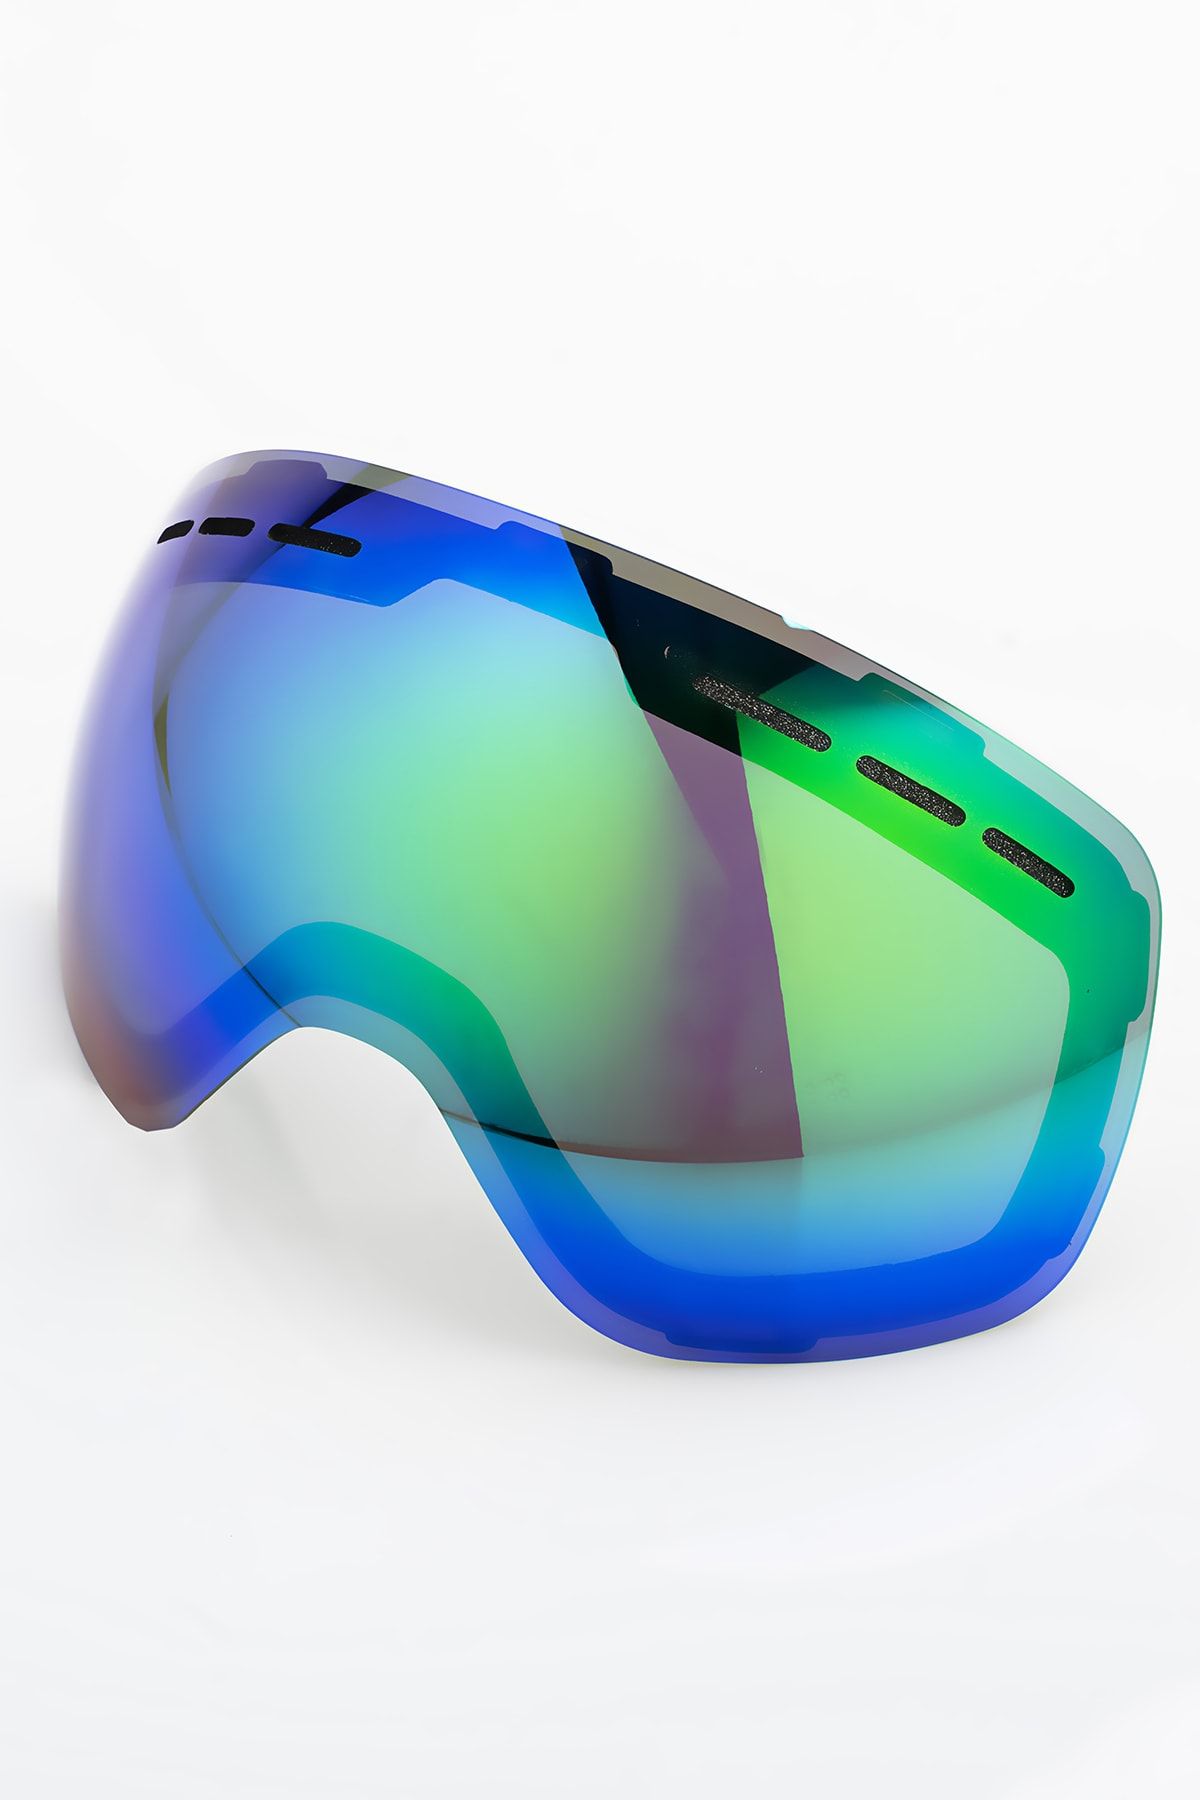 YABA Tek Lens - Gözlük Ile Uyumlu Manyetik Kayak & Snowboard Lensi